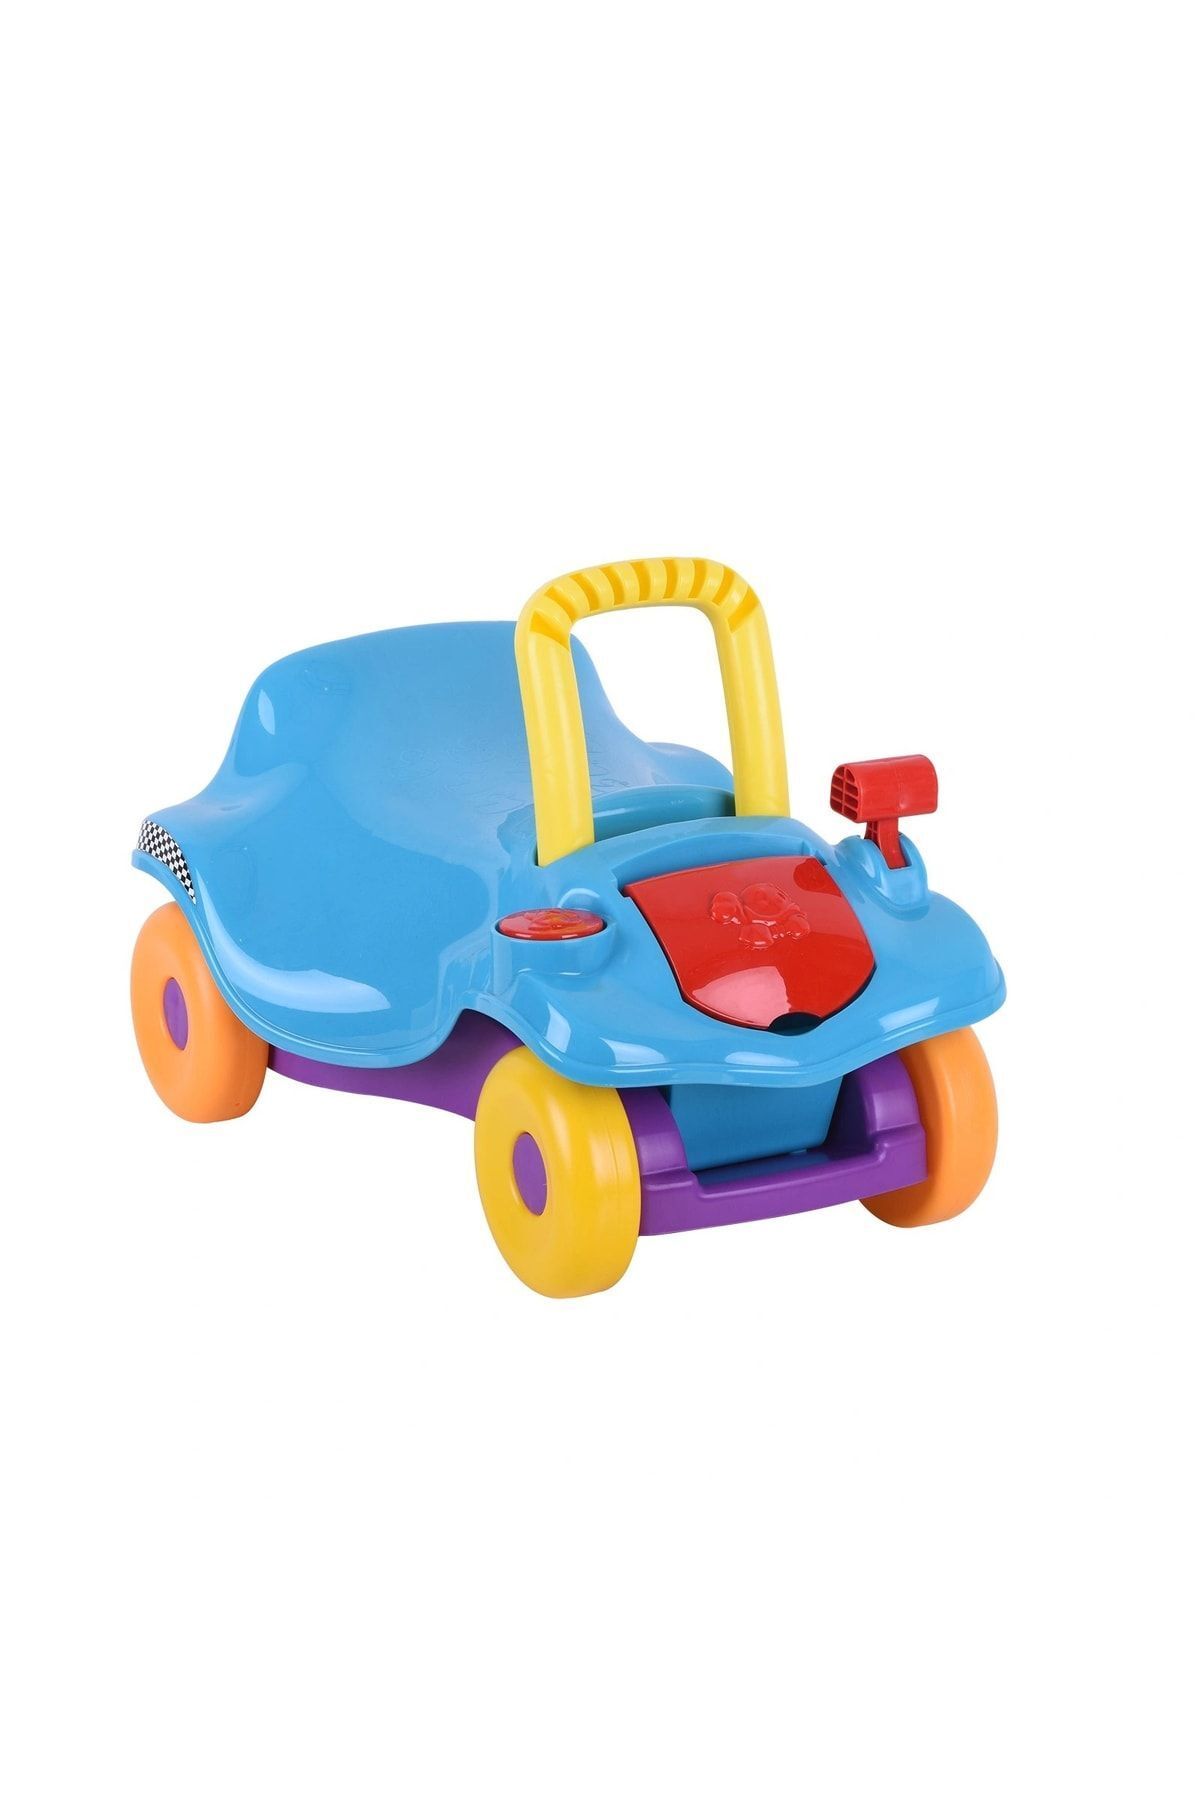 Genel Markalar Baby Toys Ilk Arabam Ilk Adım